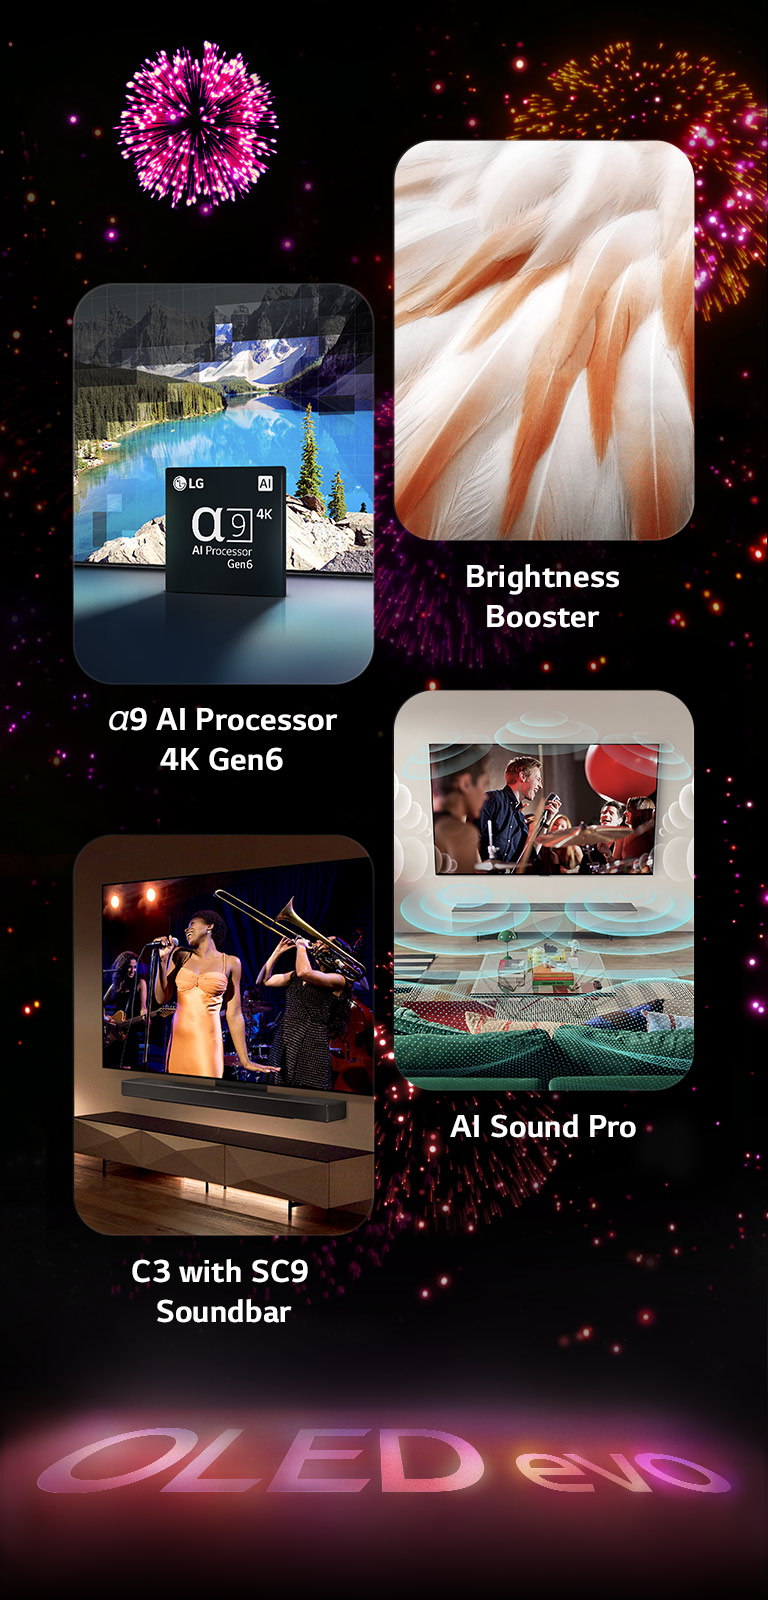 Μια εικόνα που παρουσιάζει τα βασικά χαρακτηριστικά του LG OLED evo C3 σε μαύρο φόντο με ένα ροζ και μοβ πυροτέχνημα. Η ροζ αντανάκλαση από την οθόνη πυροτεχνημάτων στο έδαφος δείχνει τις λέξεις "OLED evo". Εντός της εικόνας, μια εικόνα που απεικονίζει τον α9 AI Processor 4K Gen6 δείχνει το τσιπ να στέκεται μπροστά σε μια εικόνα μιας σκηνής σε λίμνη που ανακατασκευάζεται με την τεχνολογία επεξεργασίας. Μια εικόνα που παρουσιάζει το Brightness Booster Max δείχνει τα φωτεινά φτερά ενός πουλιού. Μια εικόνα που παρουσιάζει το SC9 Soundbar δείχνει το LG OLED evo C3 και το SC9 Soundbar τακτοποιημένα στον τοίχο με μια μουσική συναυλία να παίζει στην τηλεόραση. Μια εικόνα που παρουσιάζει το AI Sound Pro δείχνει ένα ροκ σόου που παίζει στην τηλεόραση με μουσικές φυσαλίδες που απεικονίζουν ηχητικά κύματα που γεμίζουν το σαλόνι.